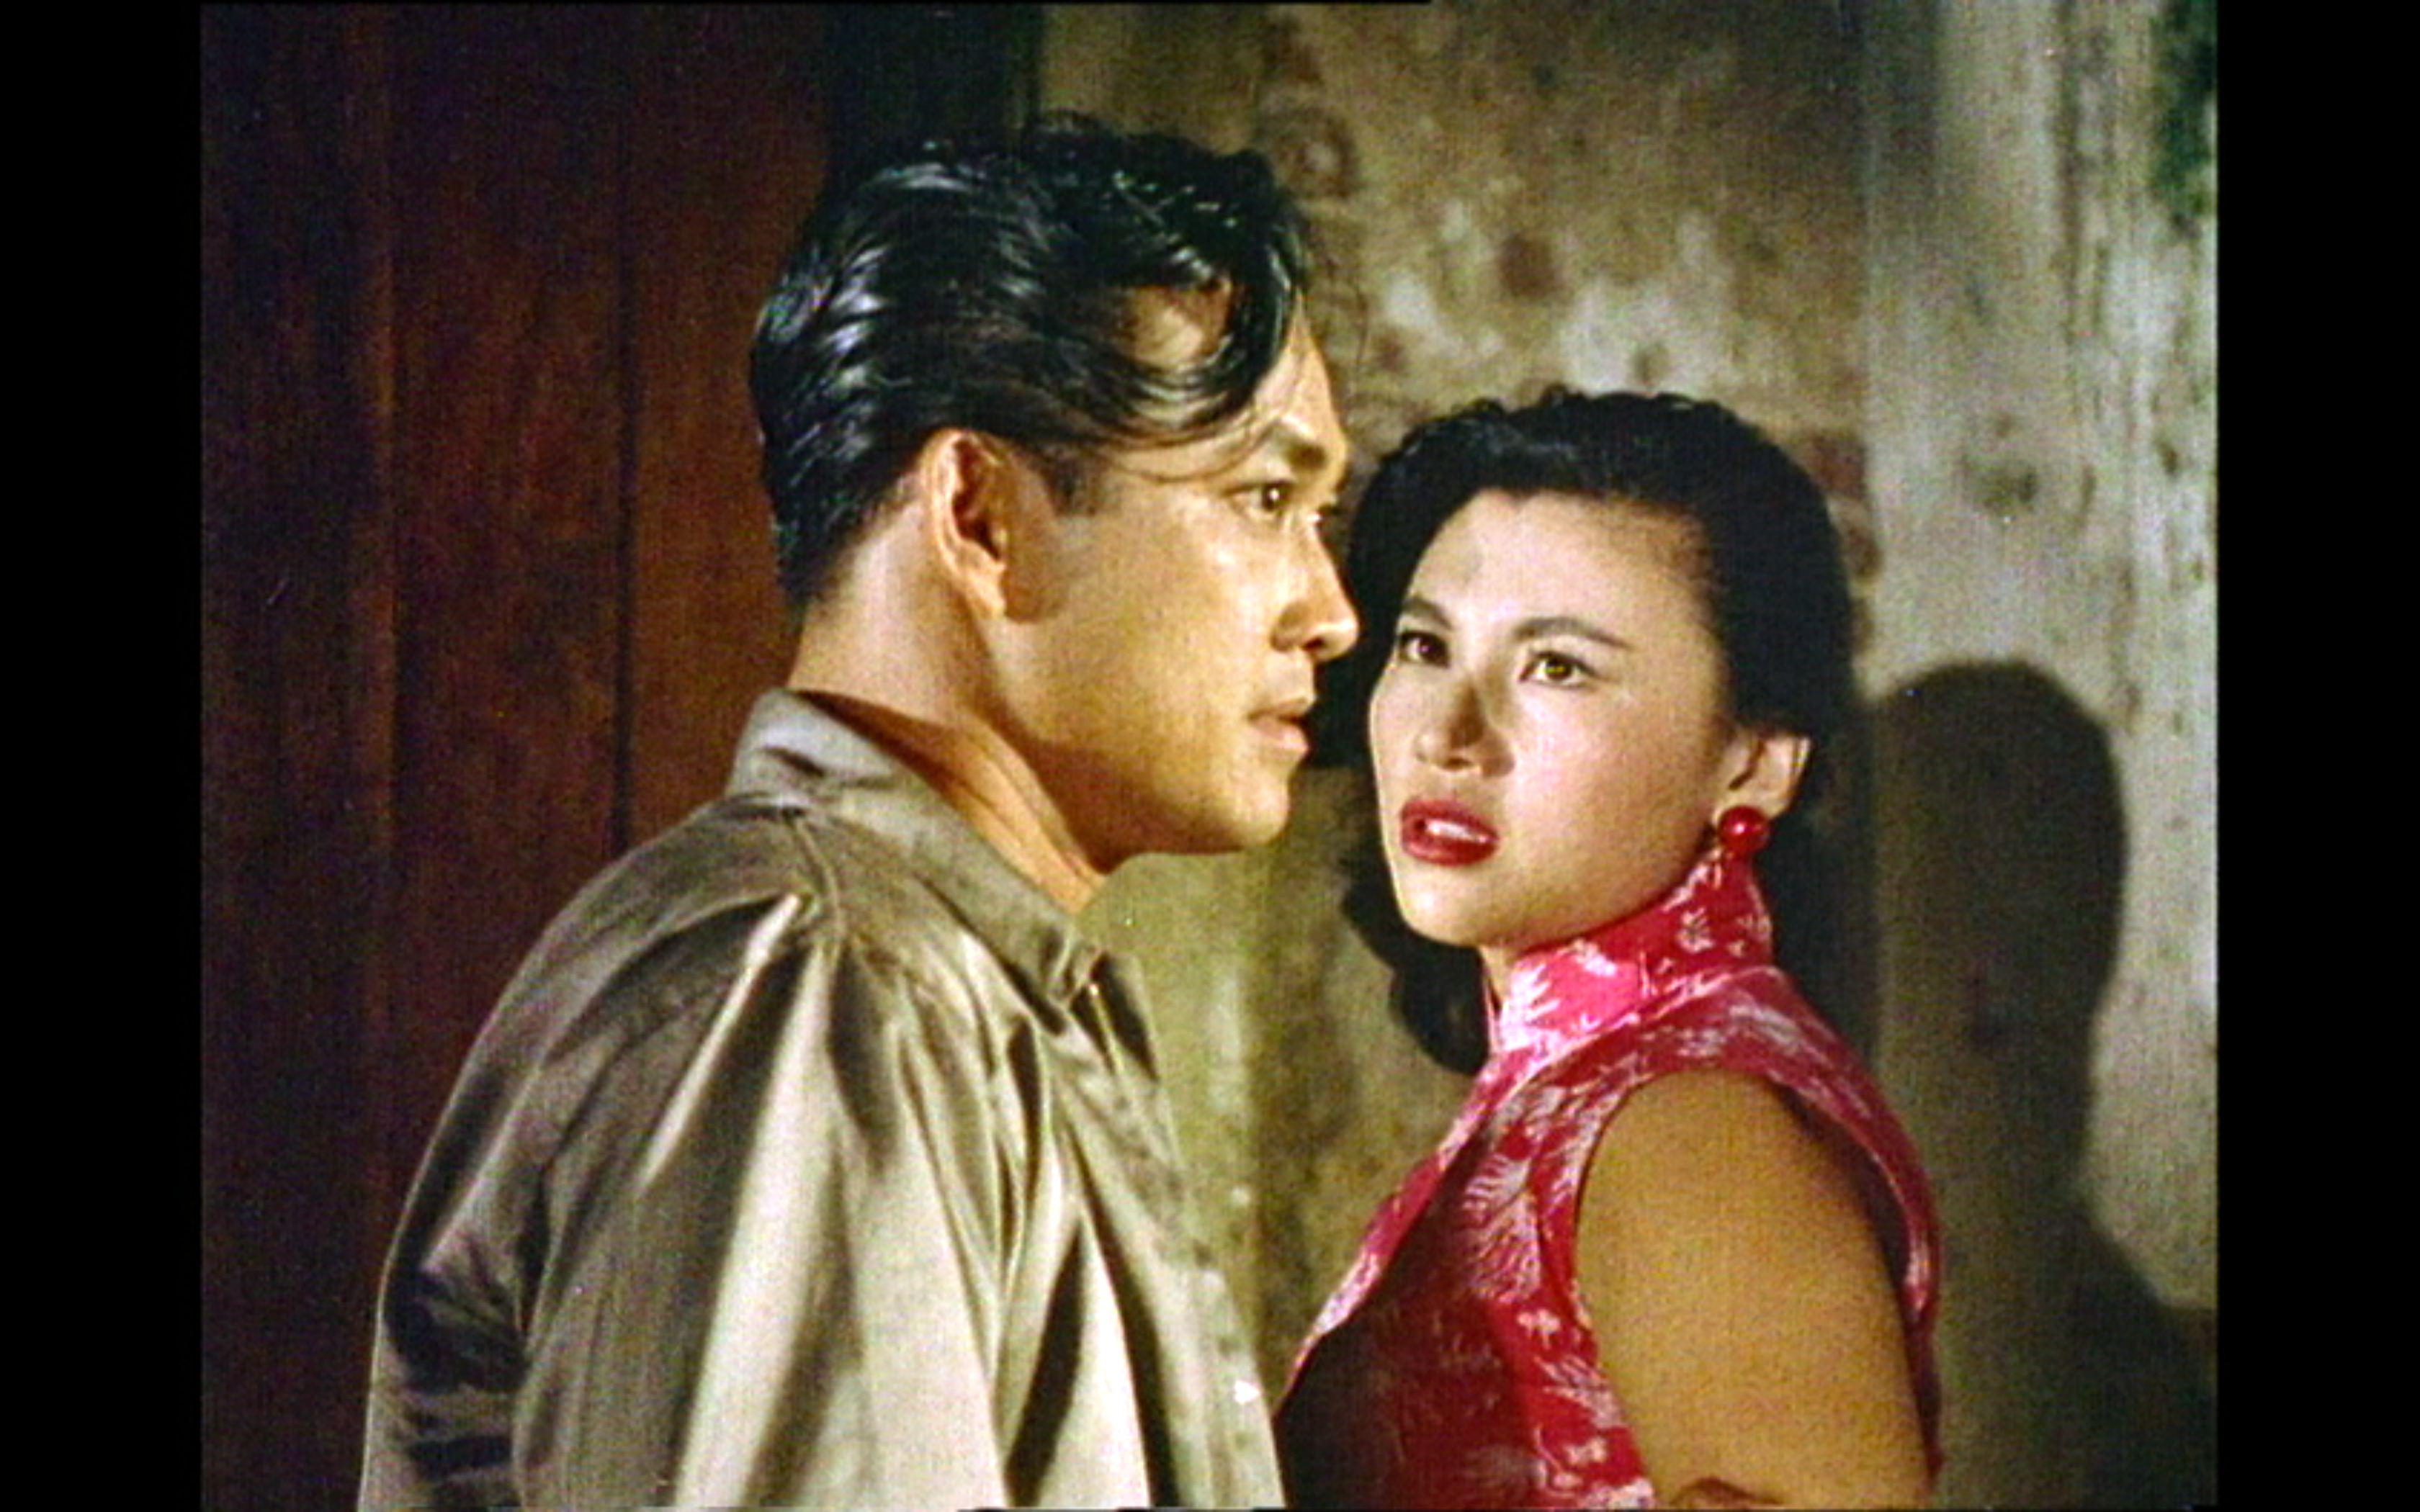 康樂及文化事務署香港電影資料館（資料館）的「光影愛漫遊」系列將與泰國駐香港總領事館合作，以「跨界的香港電影——泰國篇」為題，於十一月六日在資料館電影院放映《地下火花》（1958）和《喋血雙雄》（1989），探討香港與泰國在電影市場上跨越地域的聯繫。圖示《地下火花》劇照。